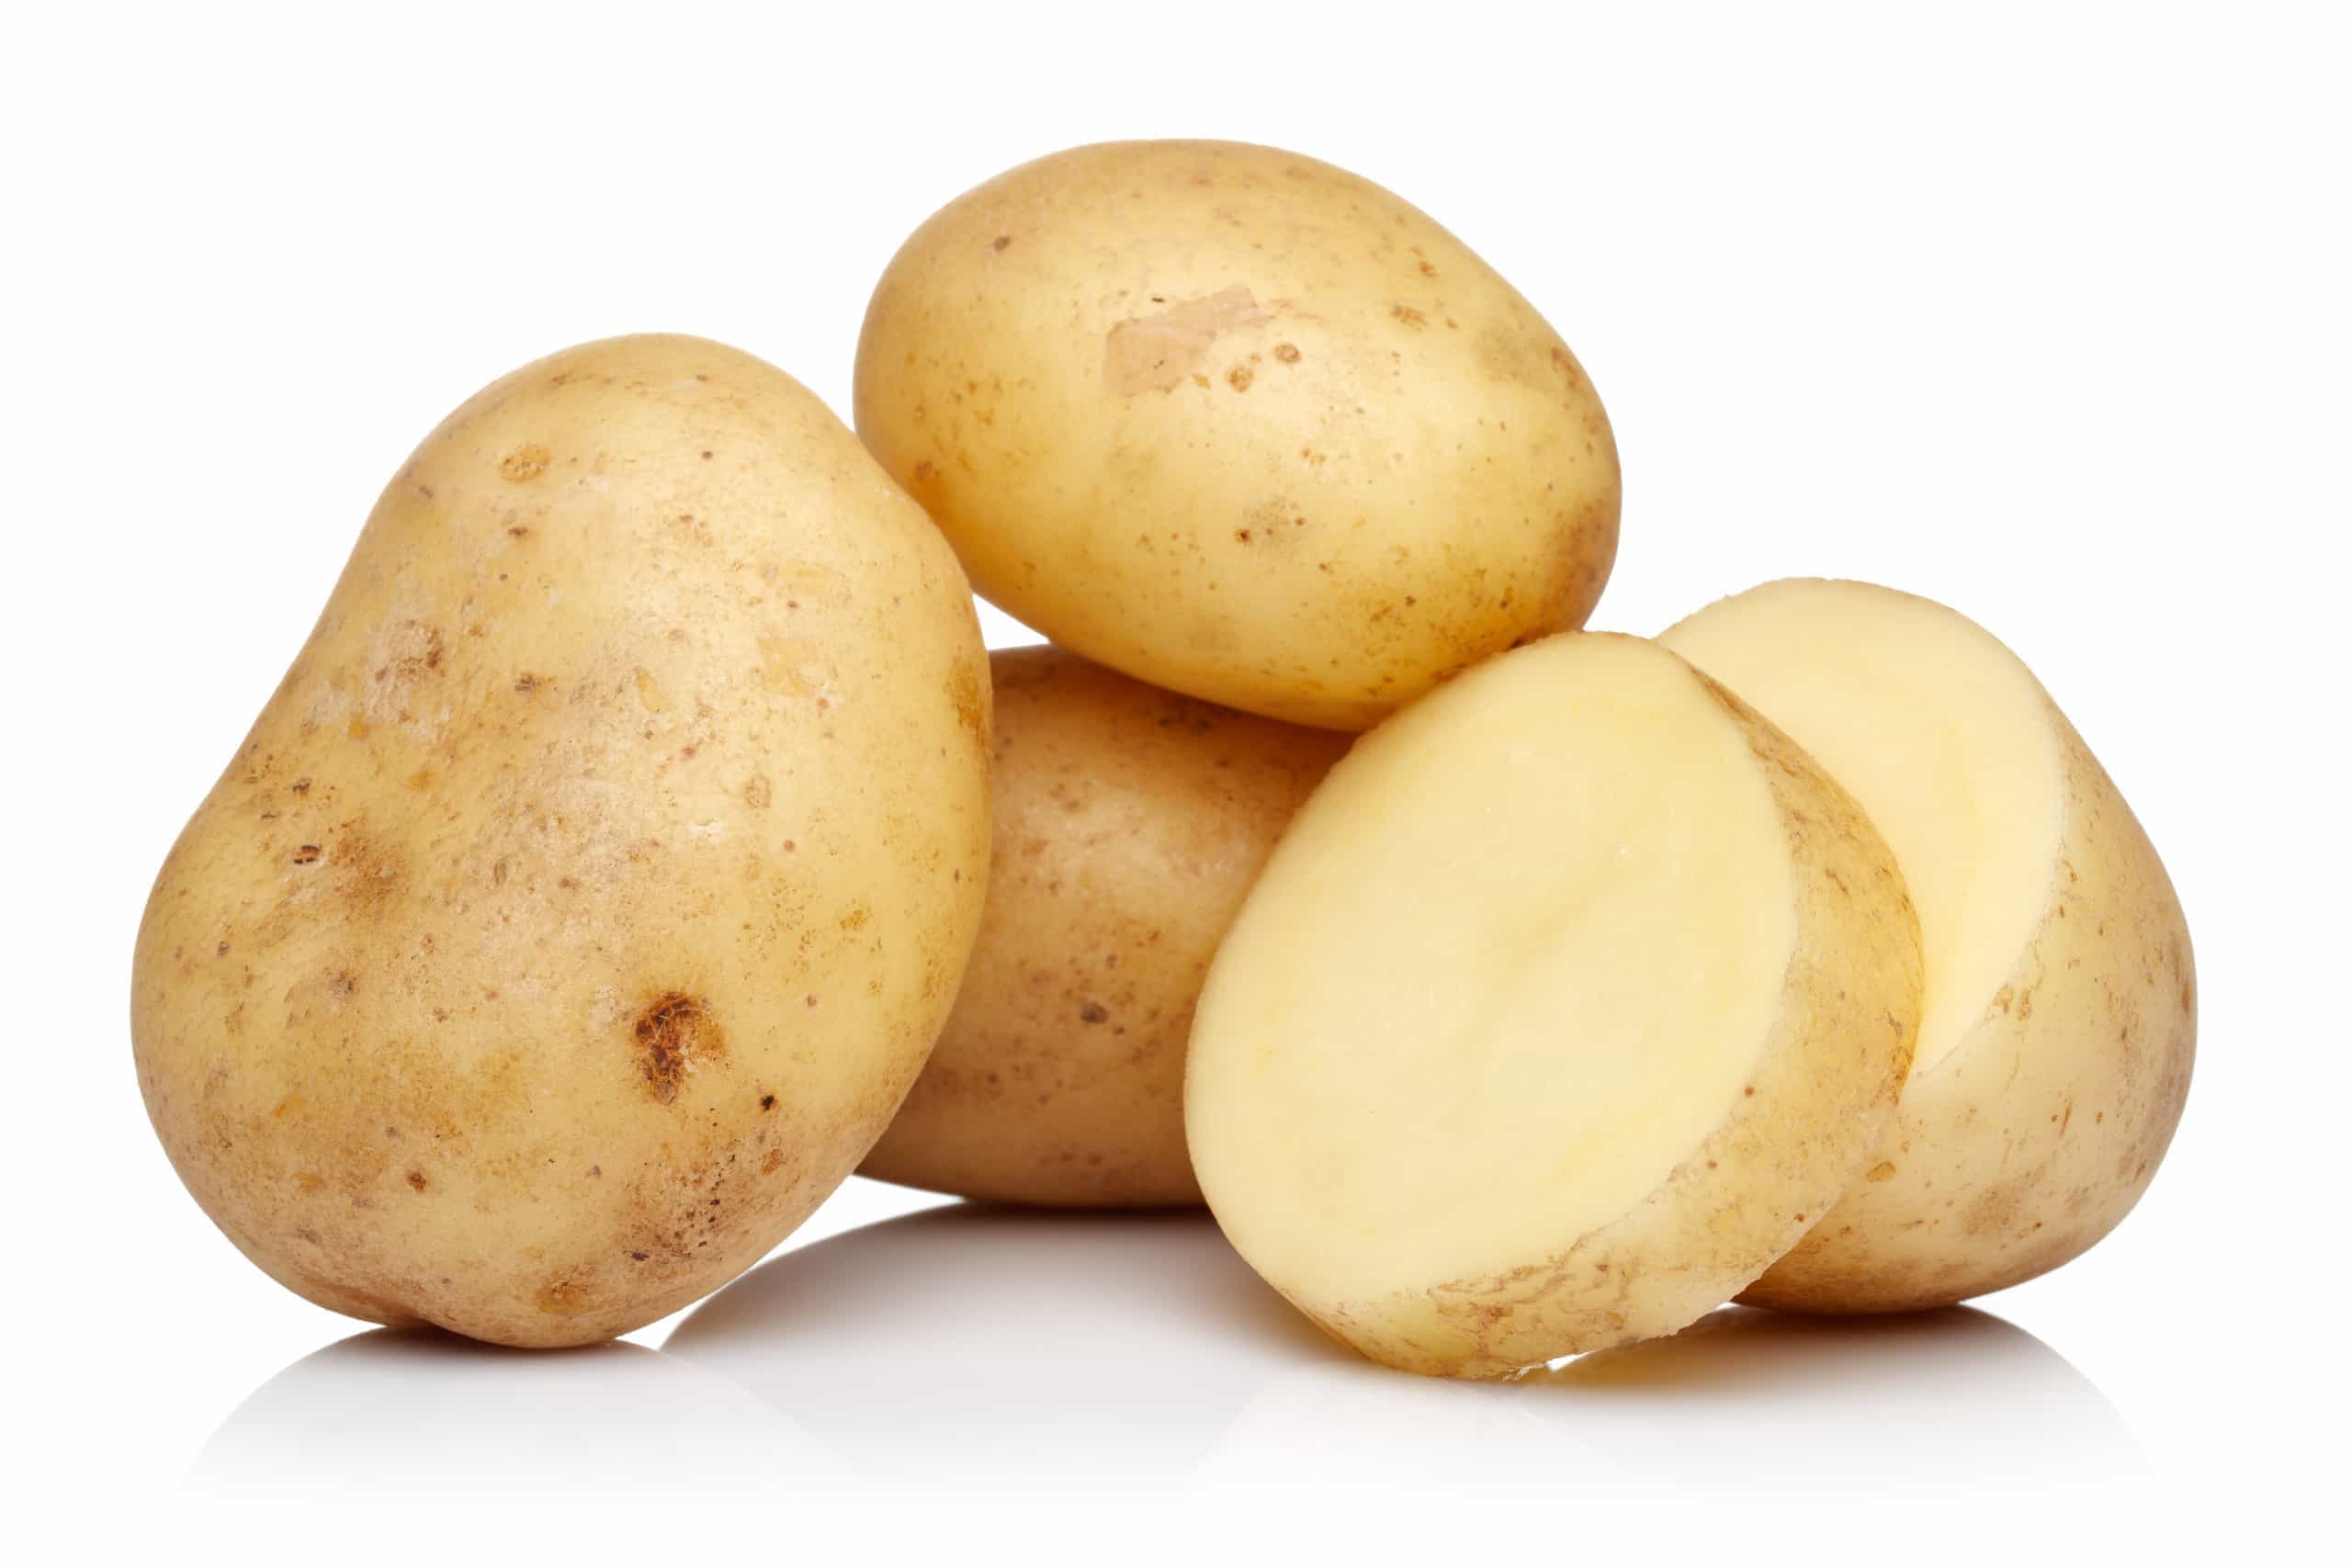 Картофель, 1 кг